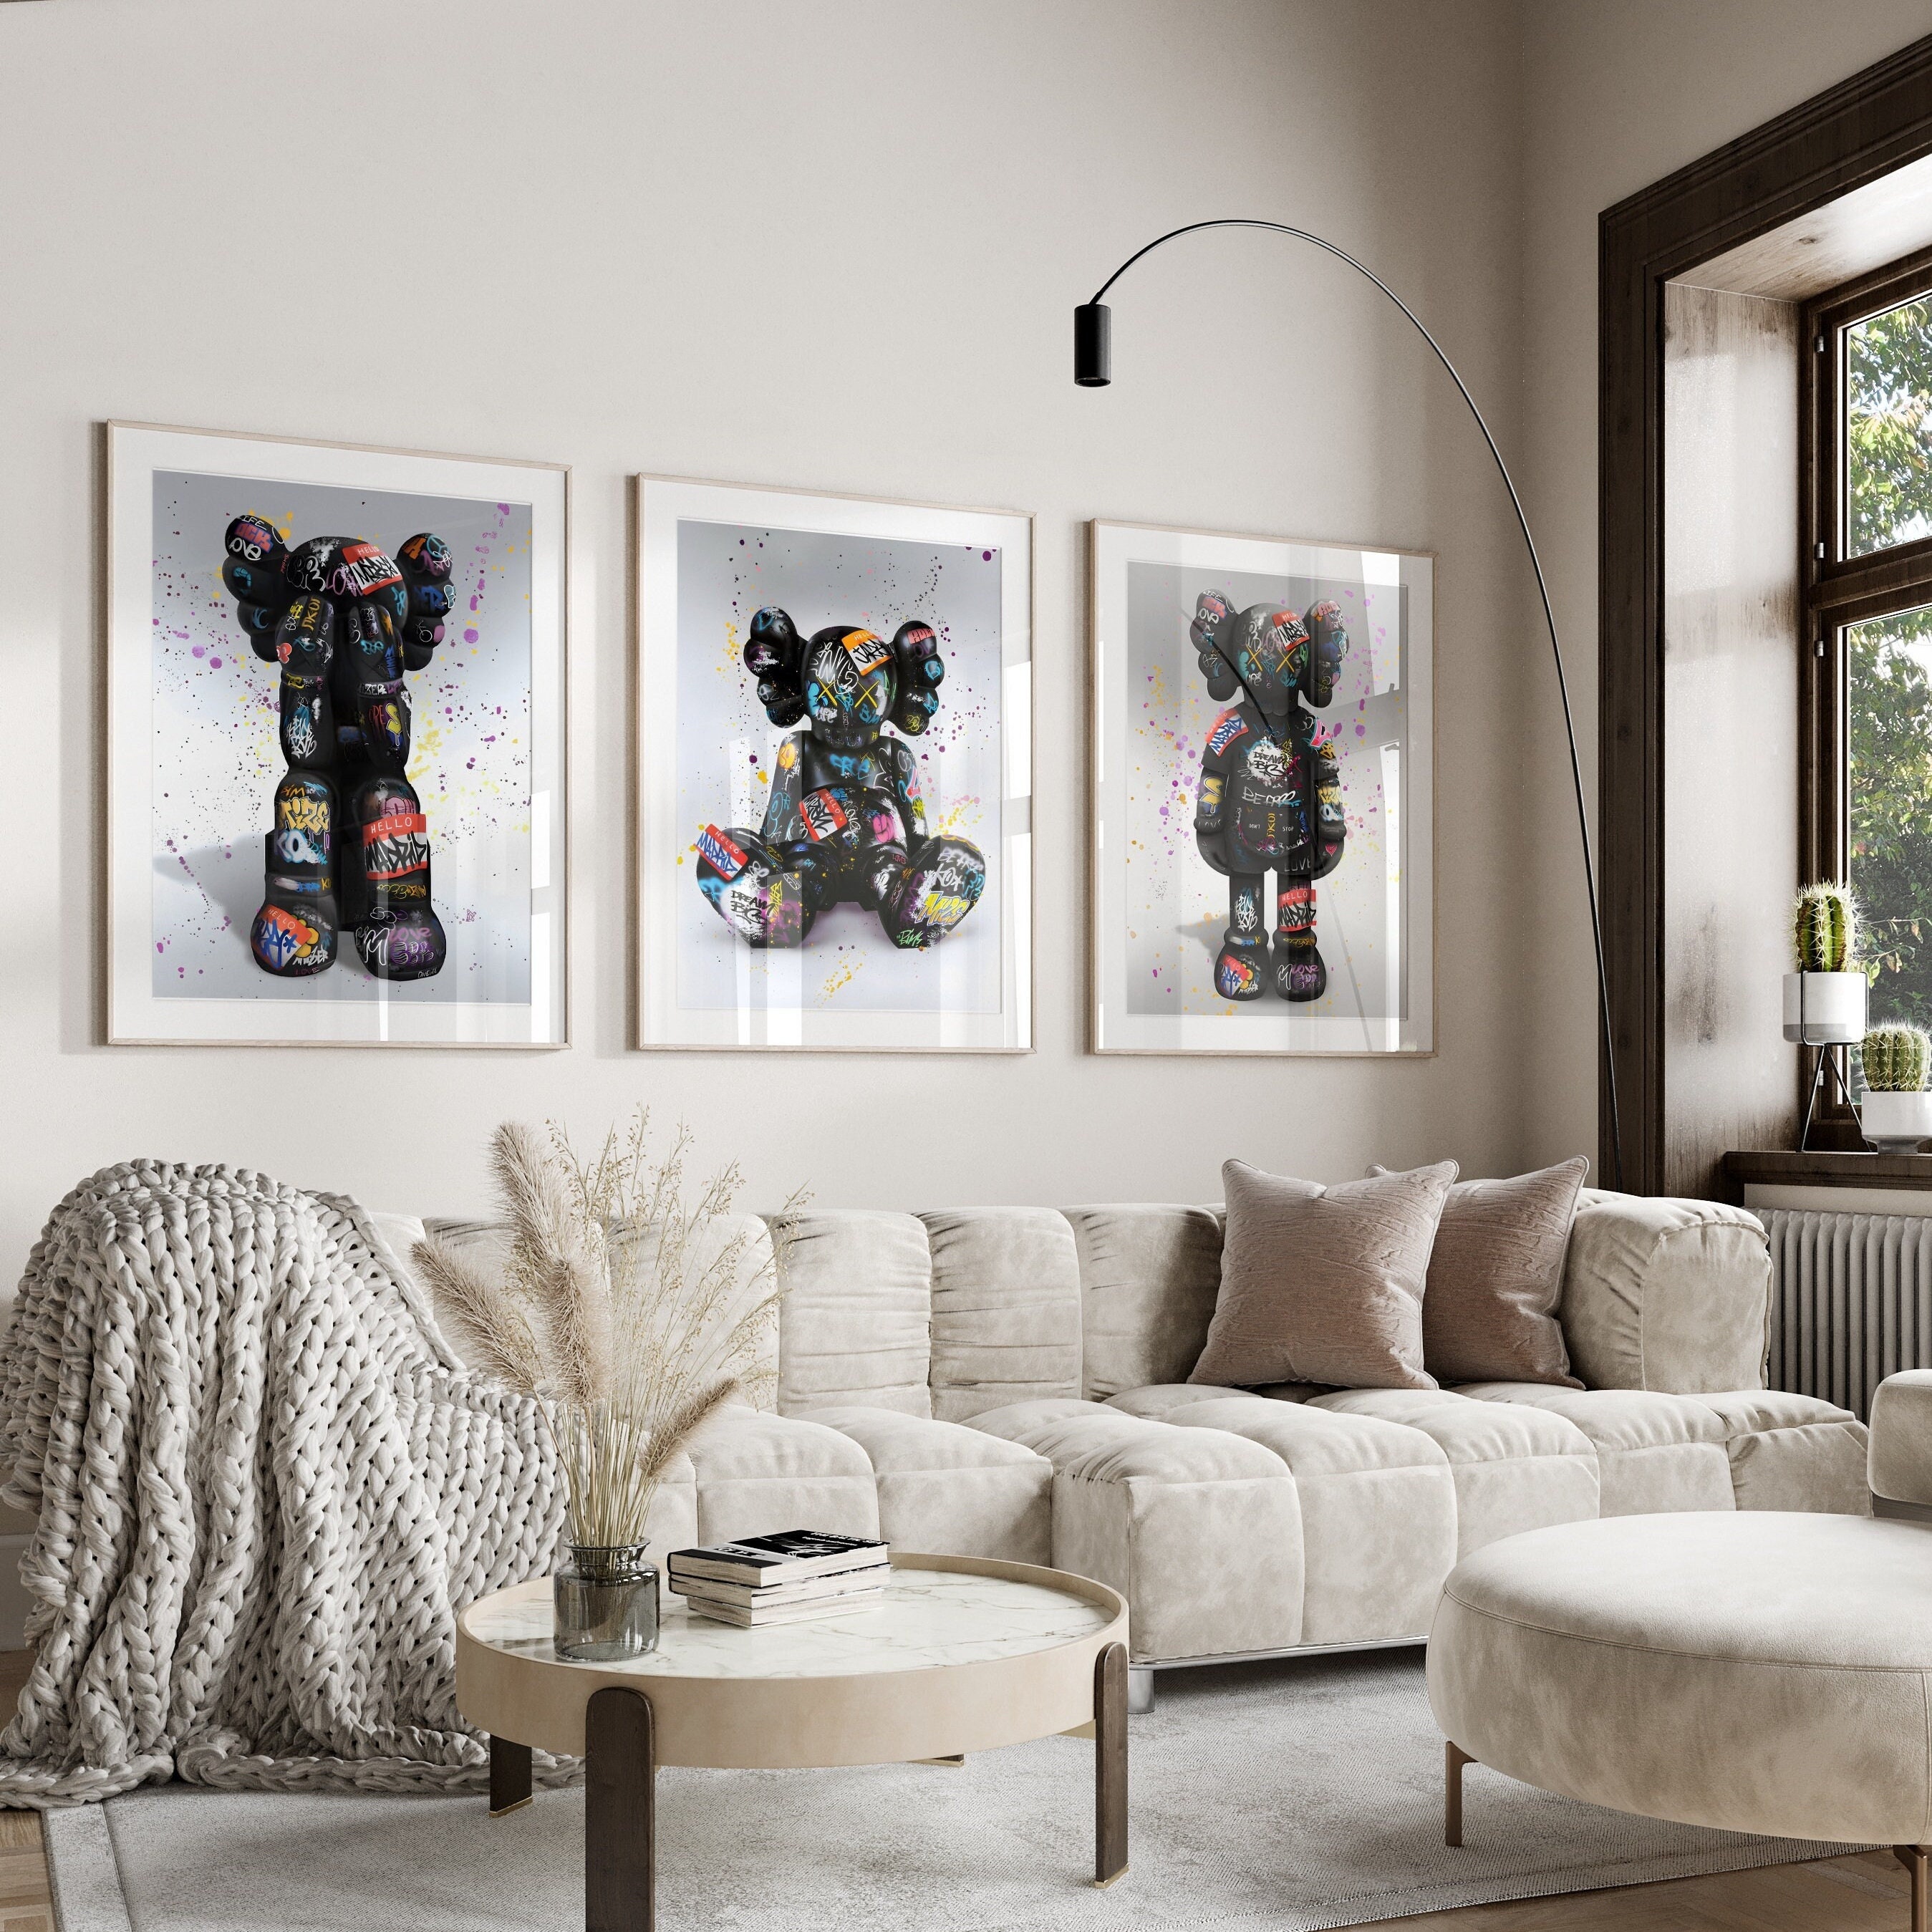 Walls Decor Prints - Creative Unique Canvas Art - KAWS Louis Vuitton